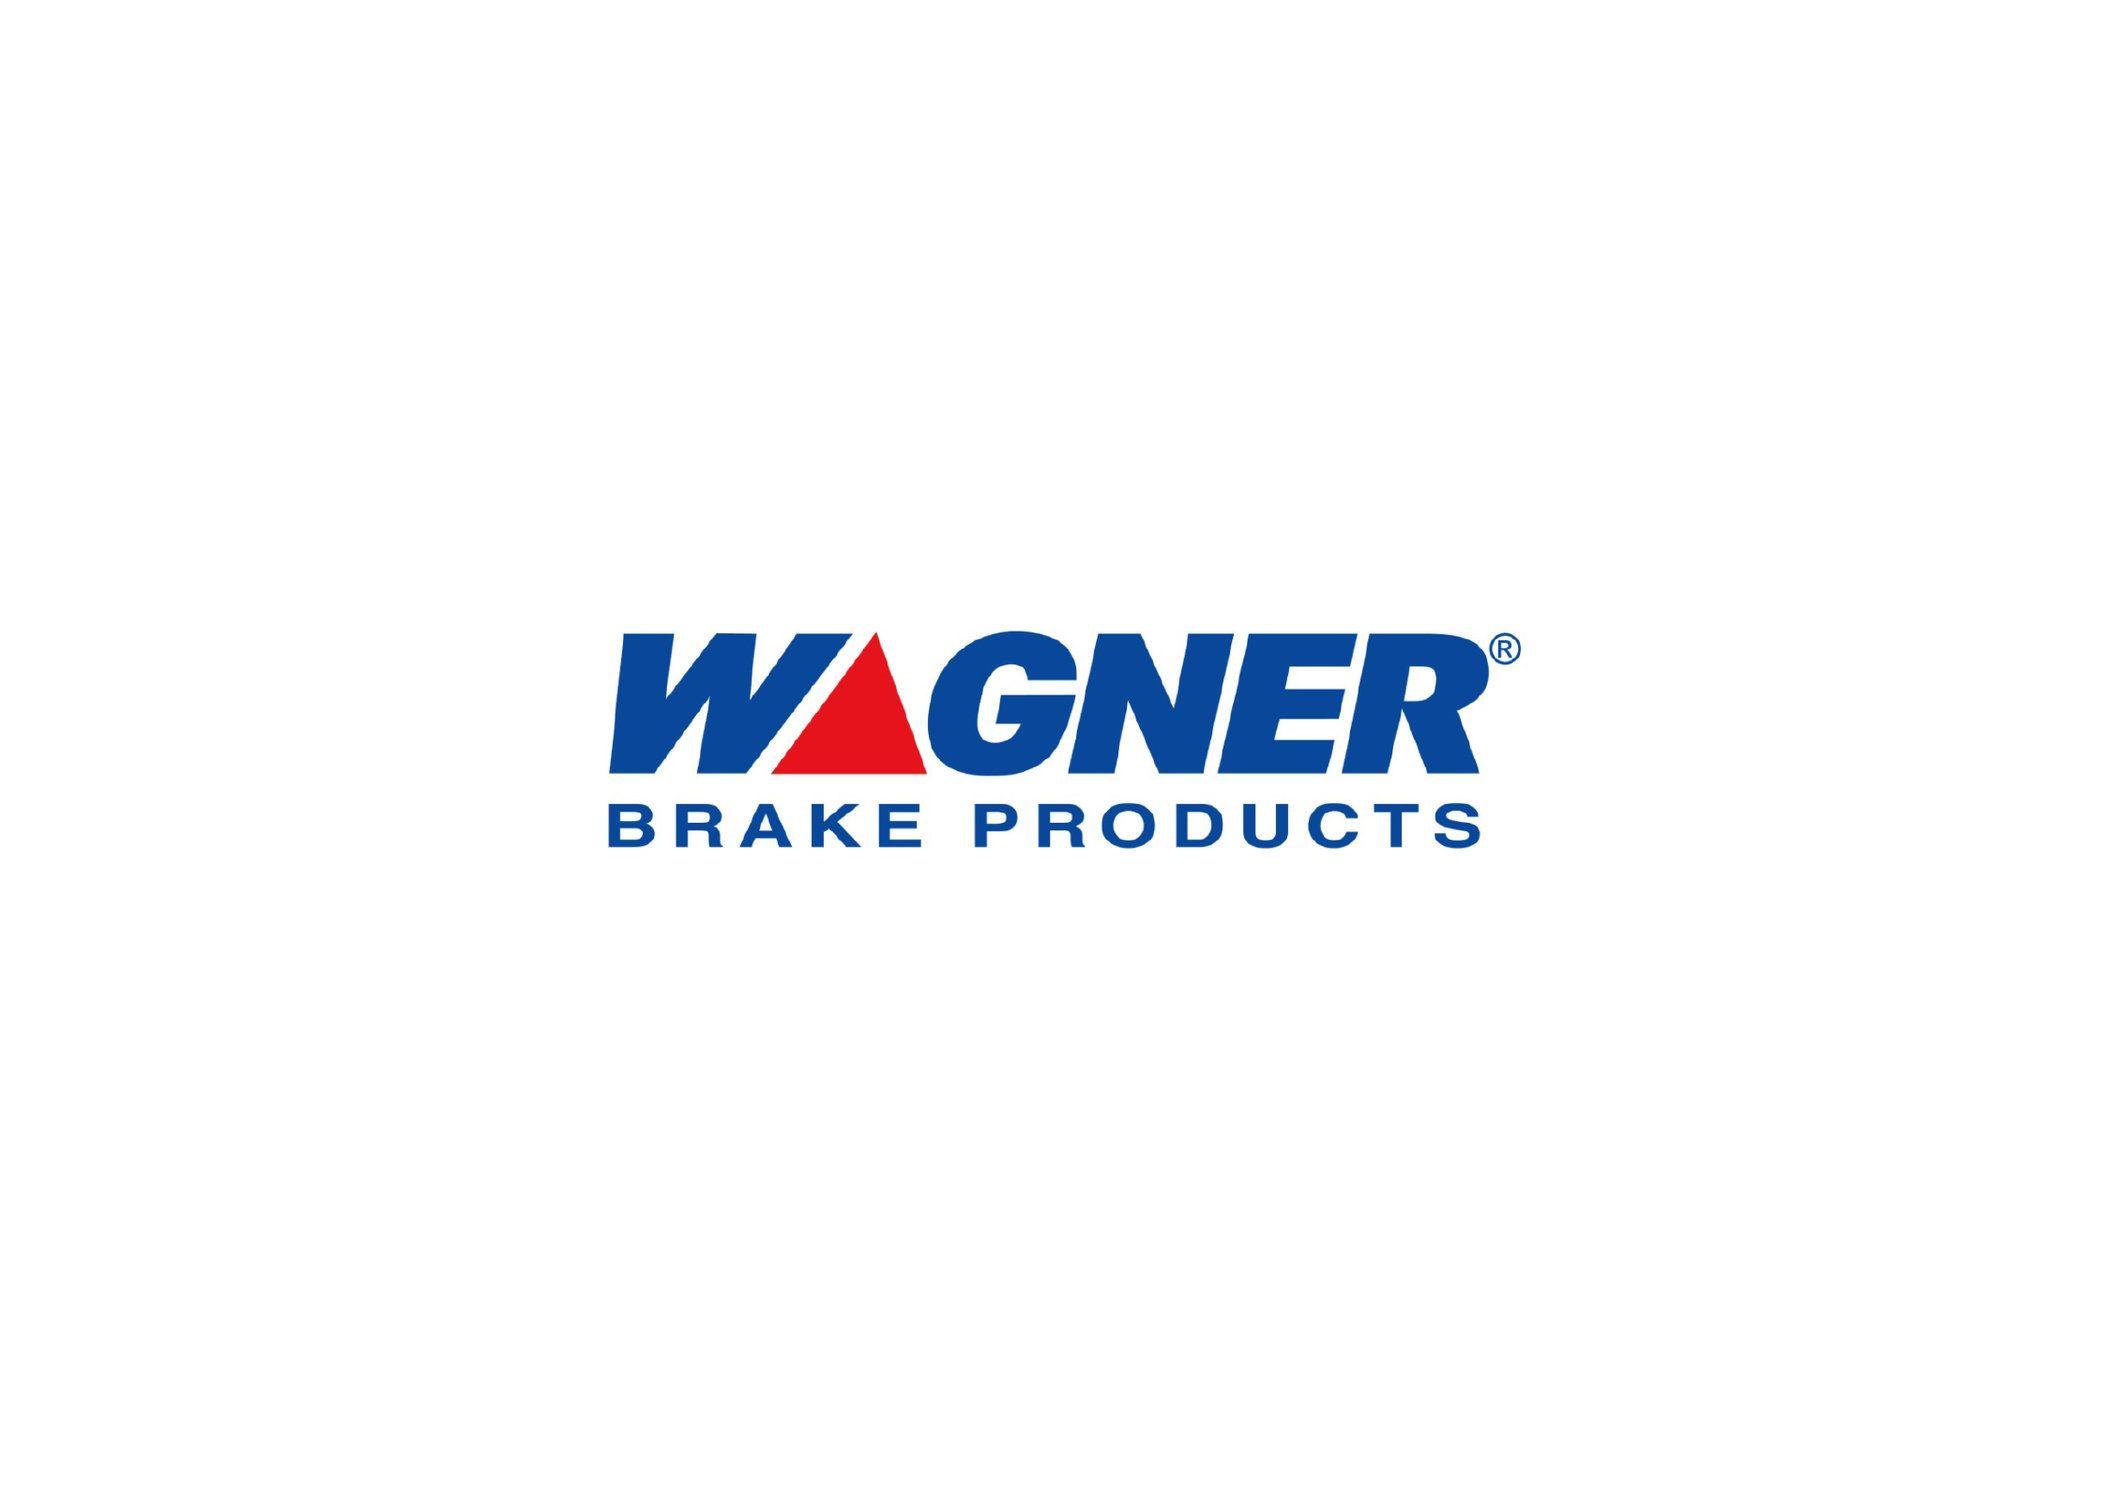 Wagner Logo - Wagner Brakes - REBRAND